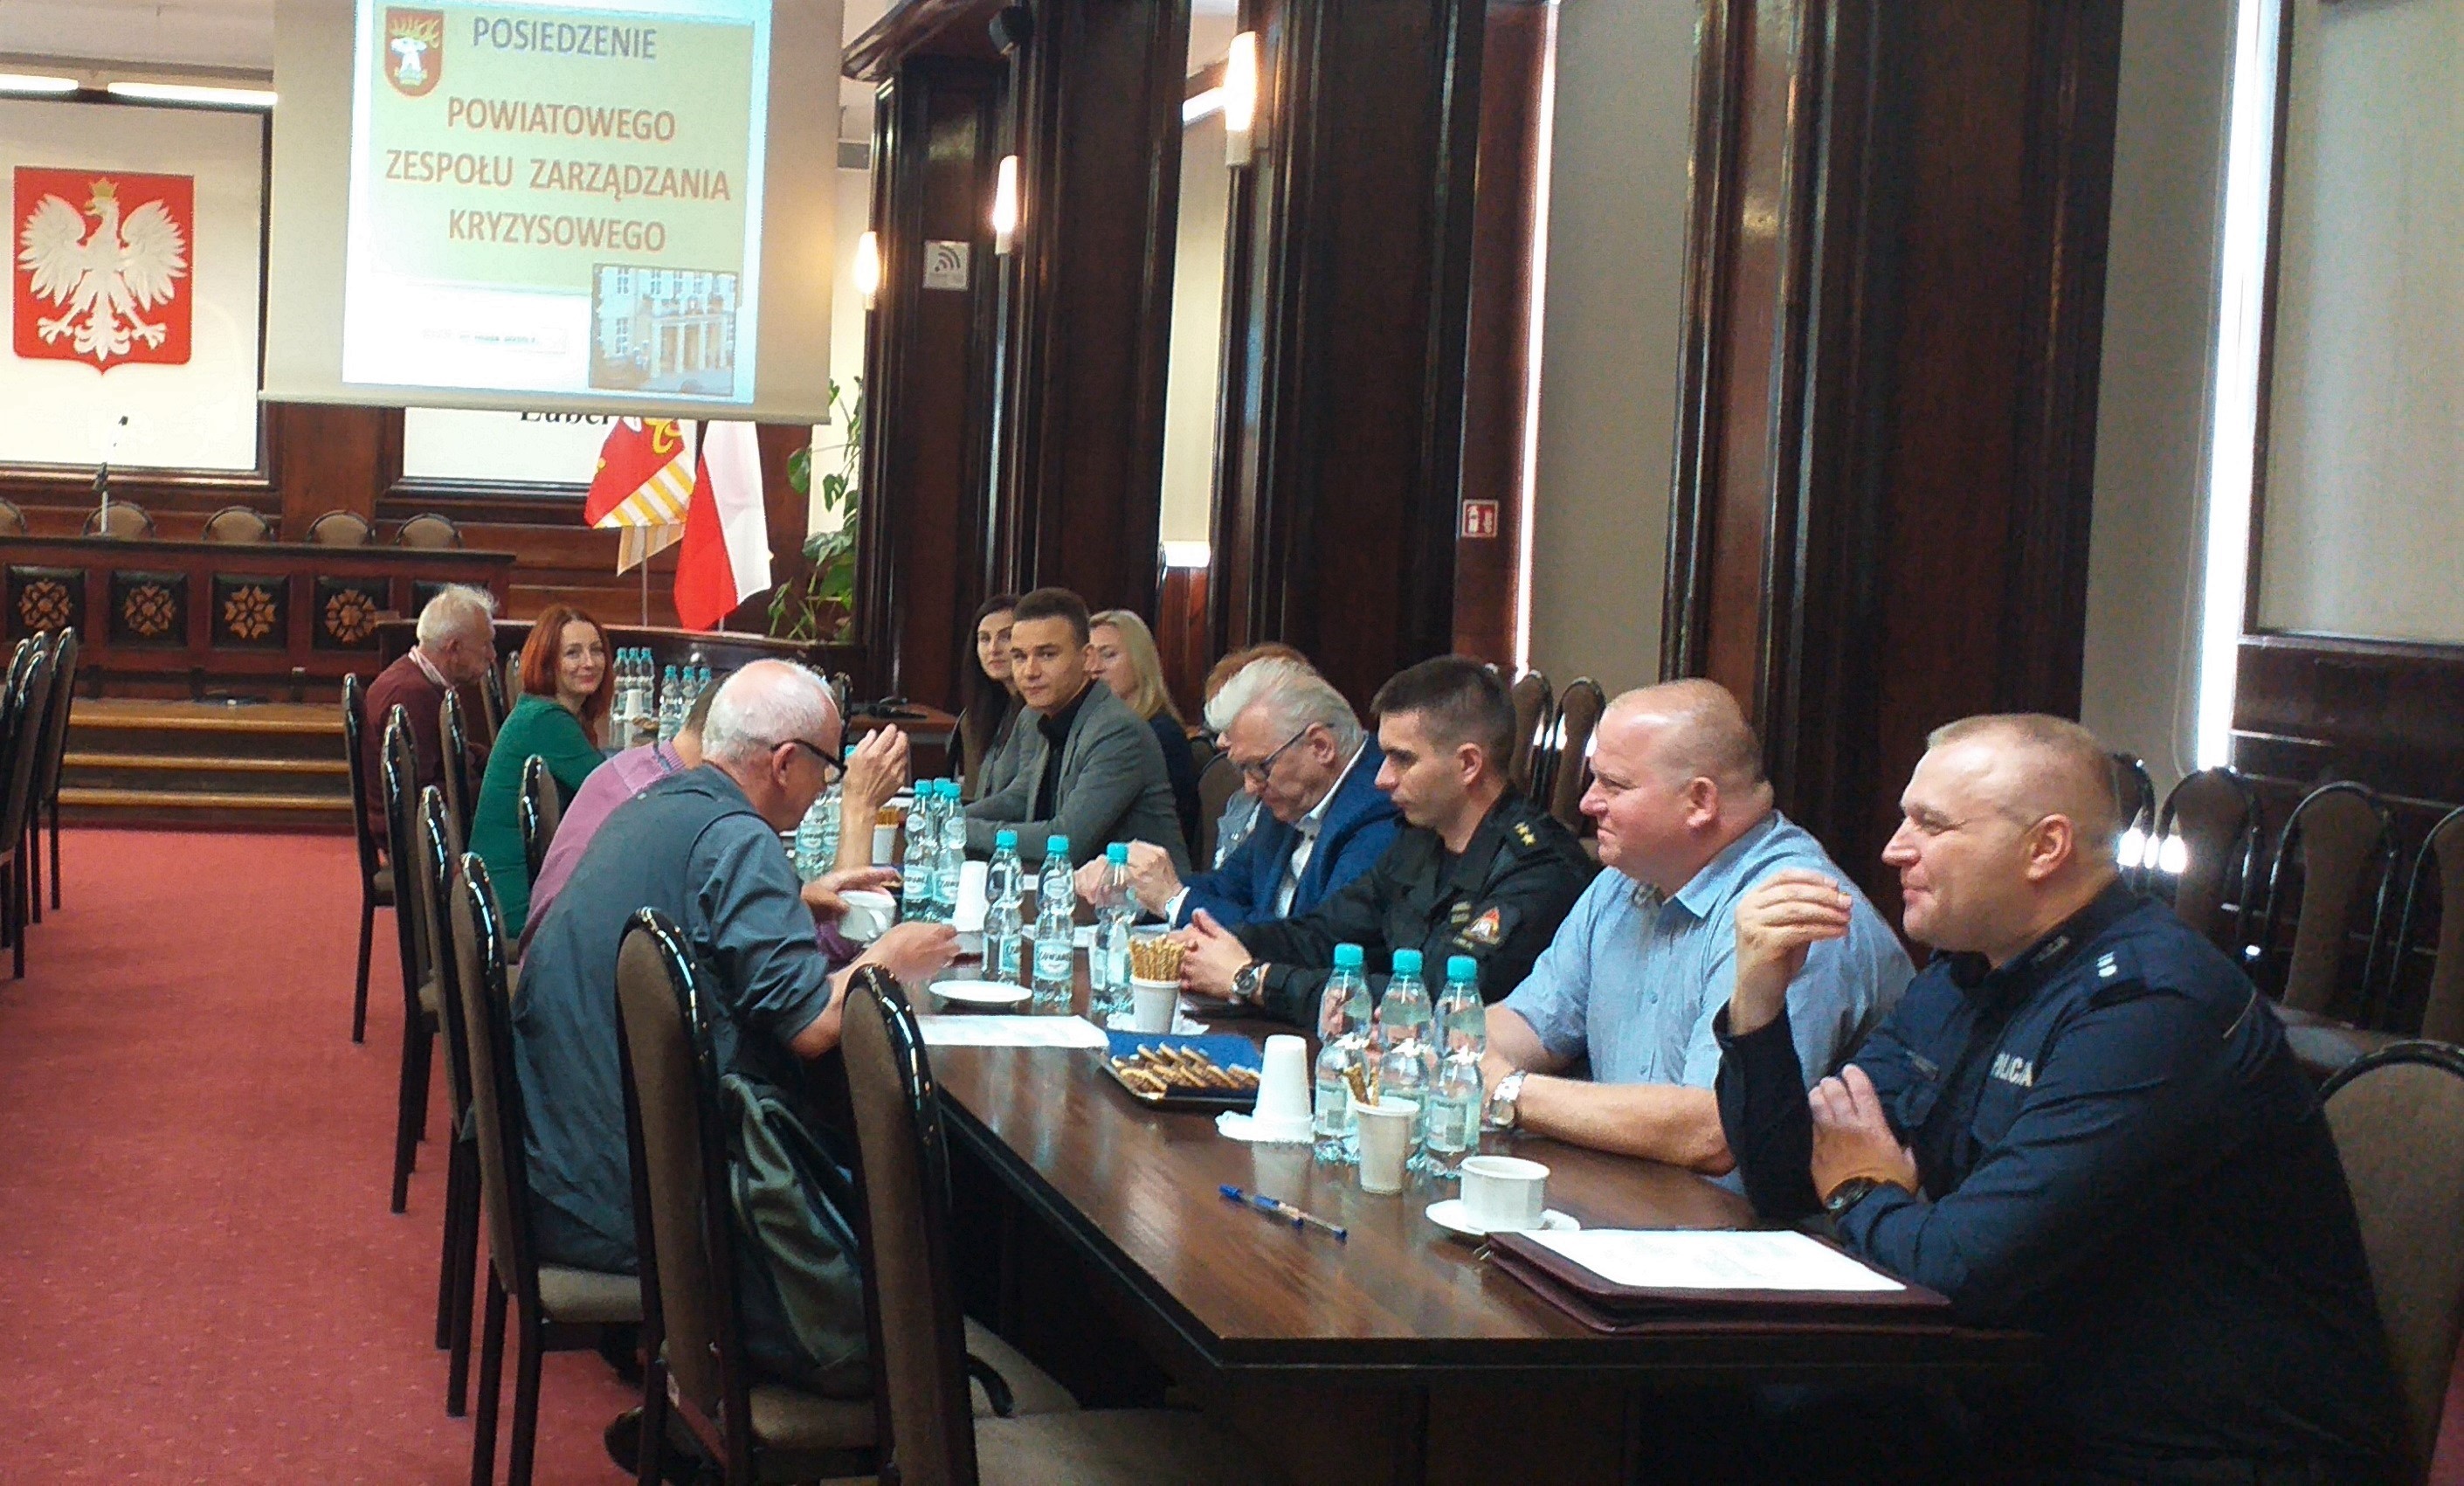 Posiedzenie Powiatowego Zespołu Zarządzania Kryzysowego w Lublinie w dniu 20 maja 2019 r.